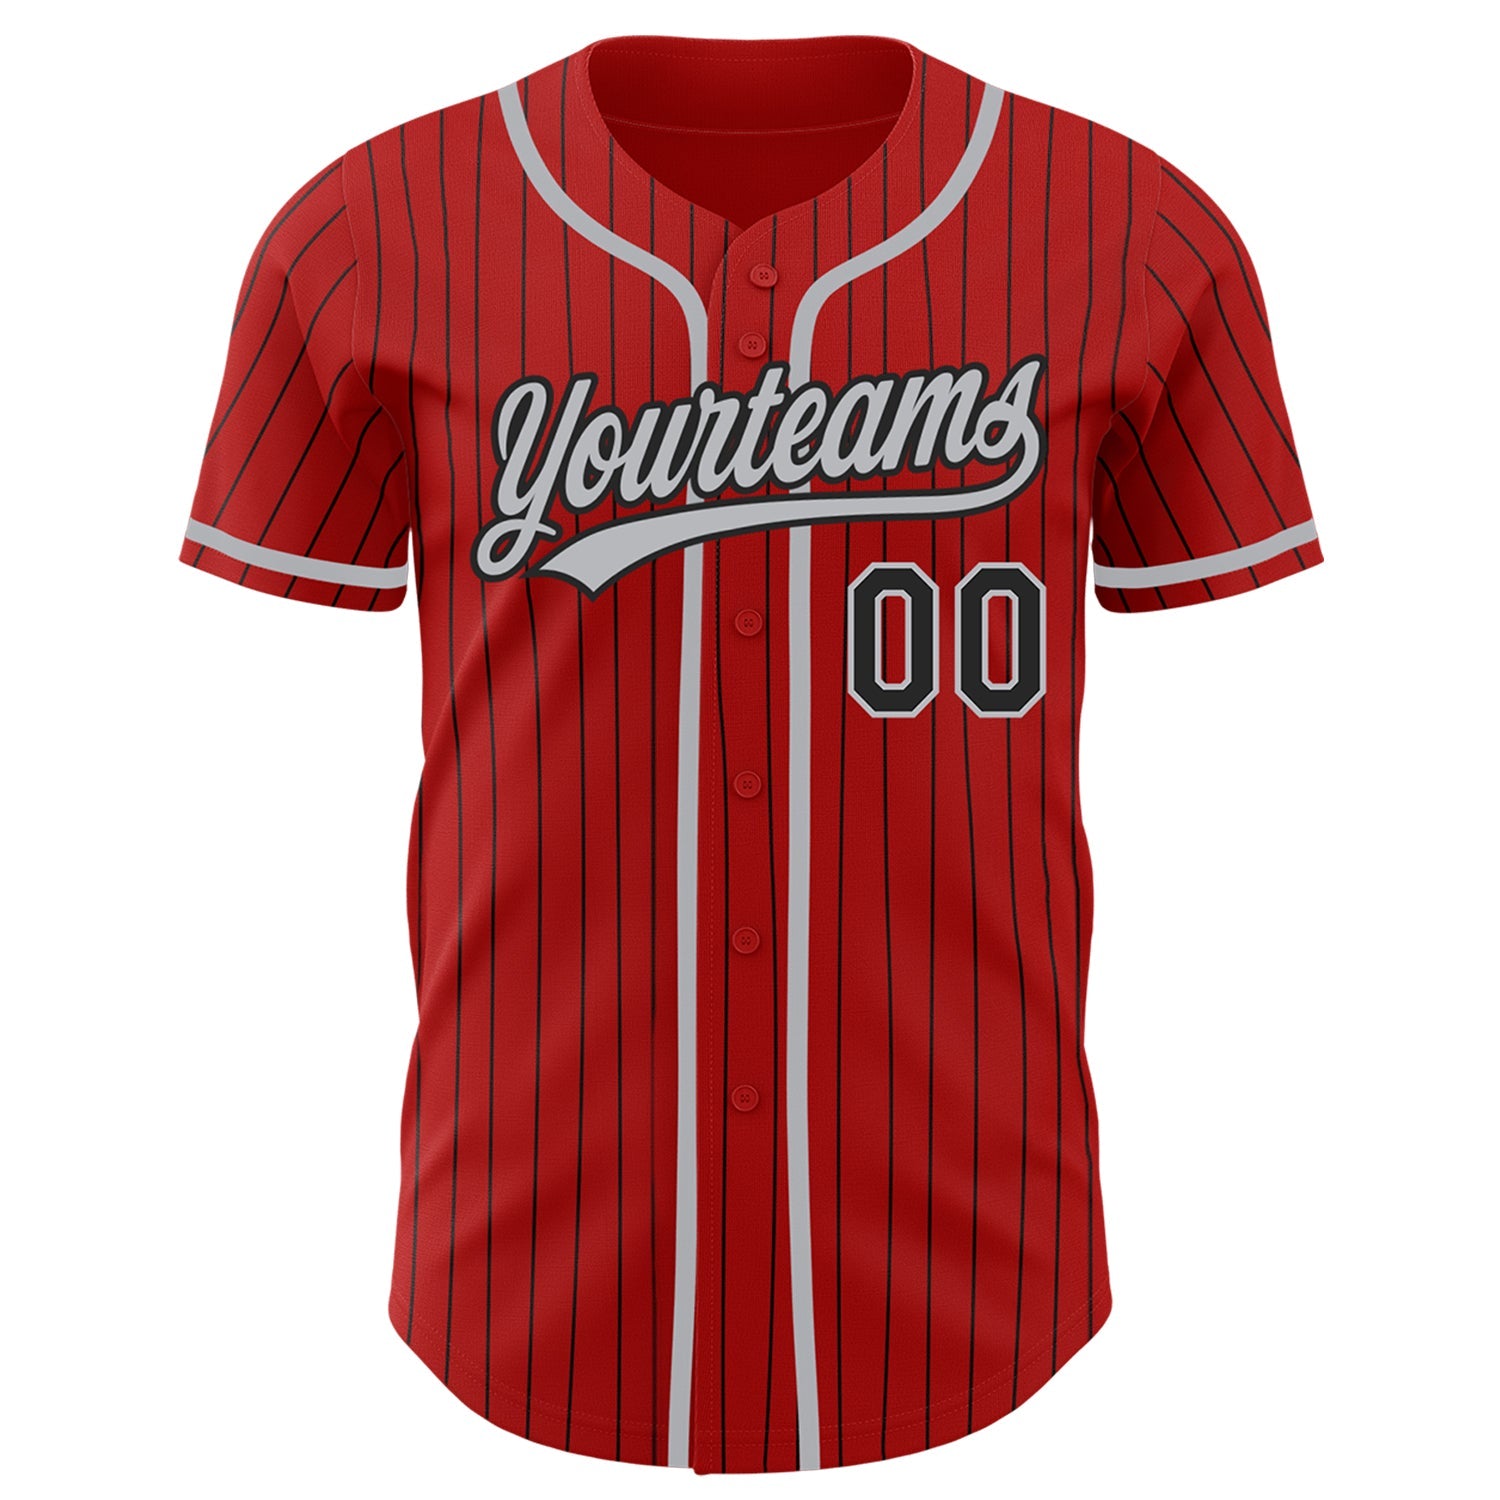 Camisa de beisebol autêntica vermelha personalizada com riscas pretas cinza